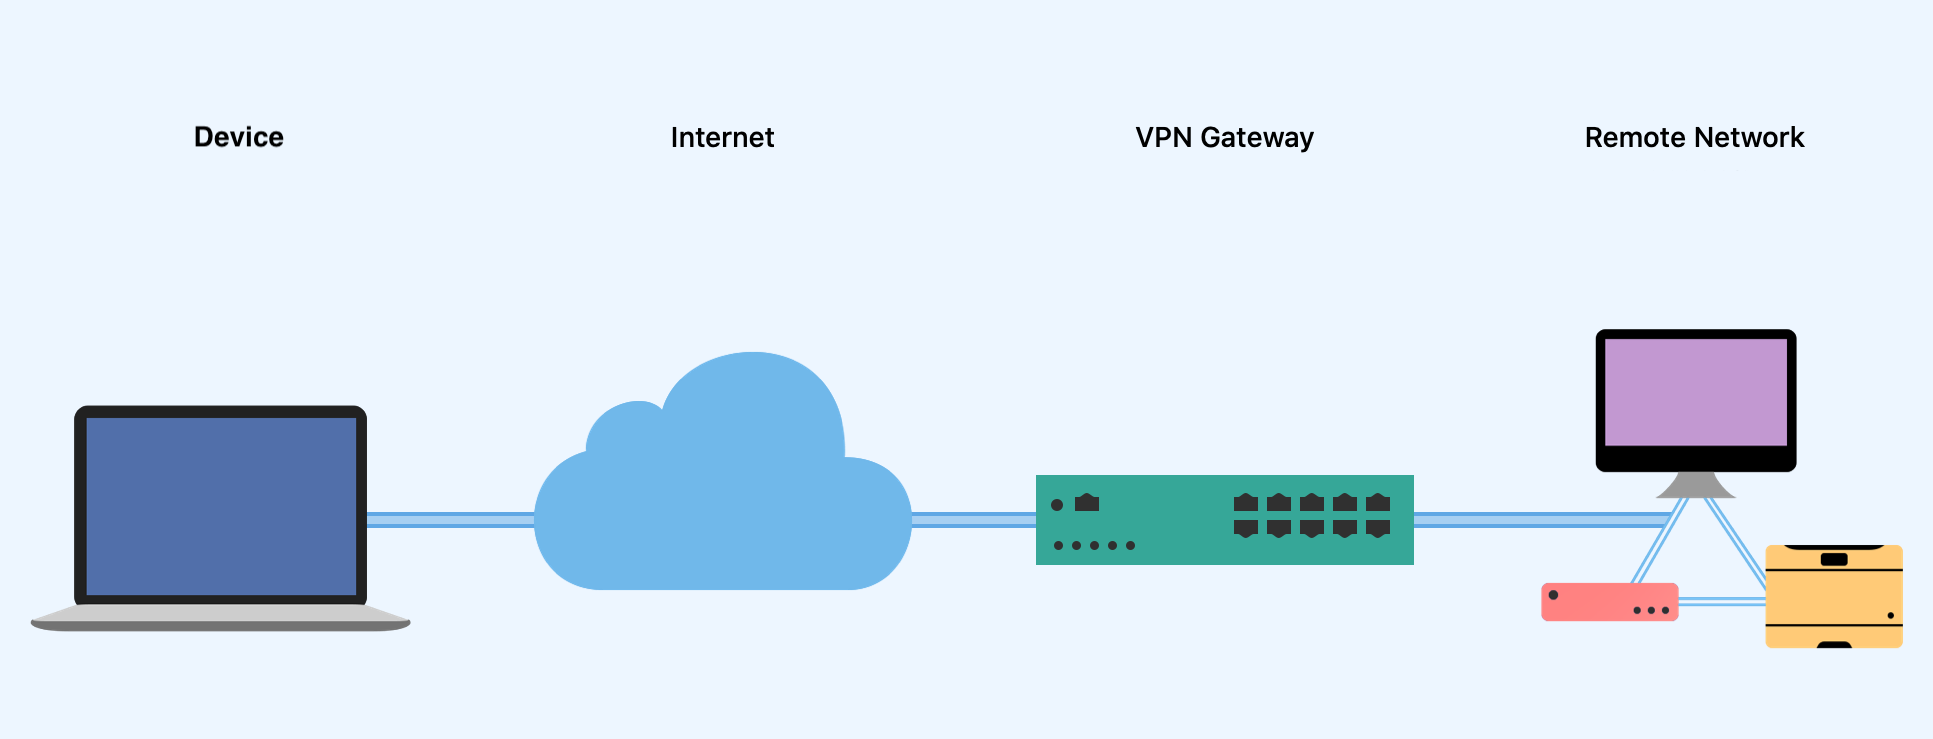 Why use a VPN gateway?